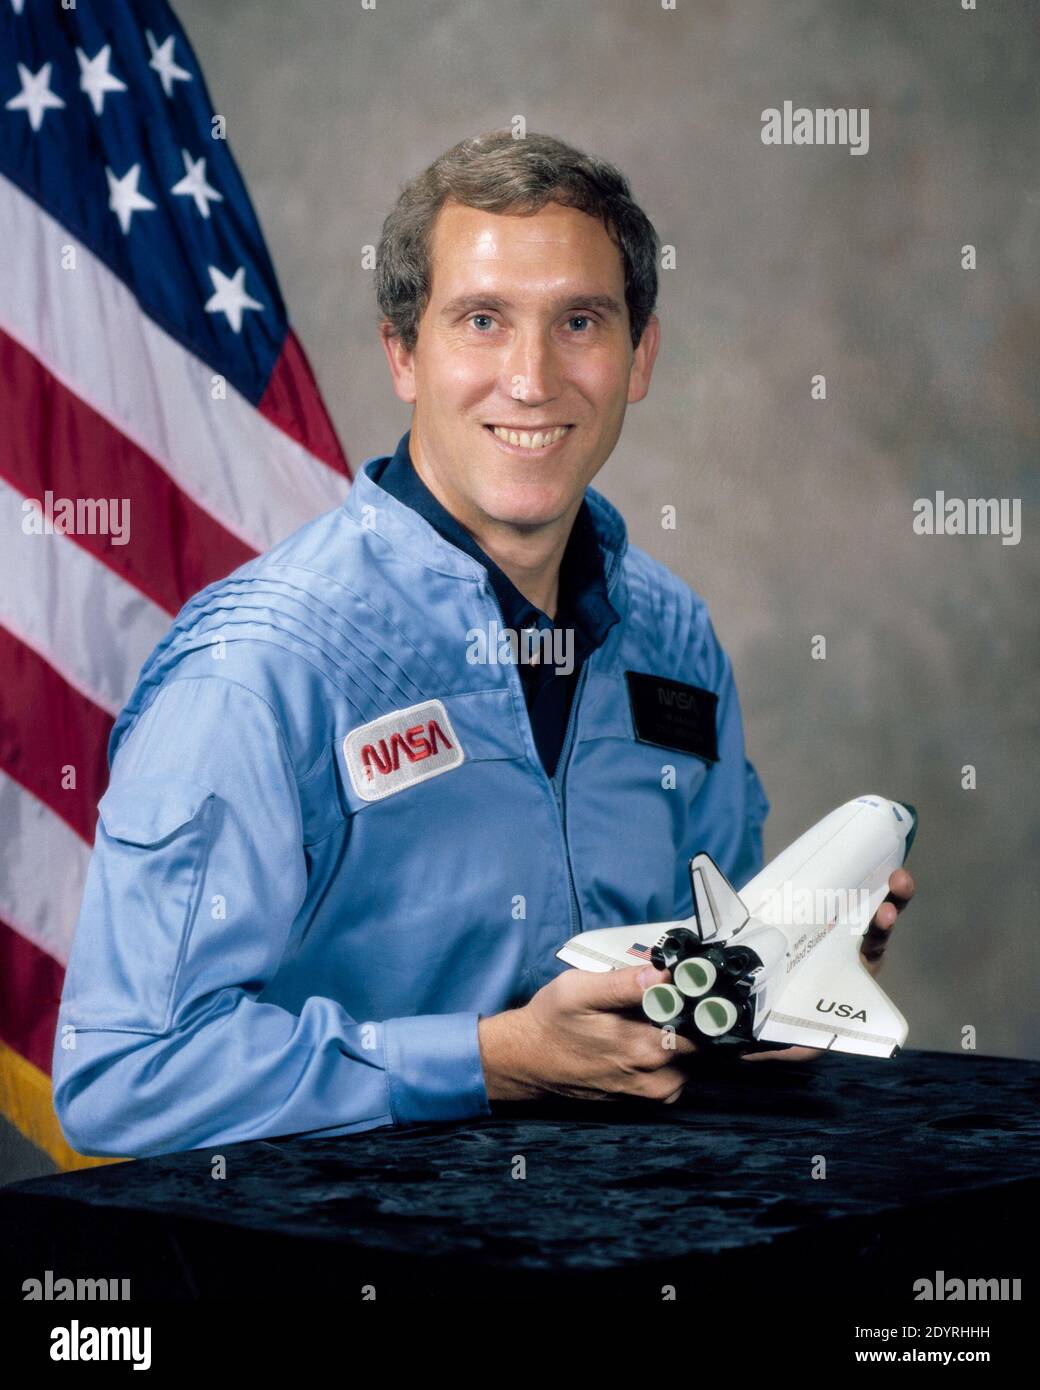 Michael John Smith (30 de abril de 1945 – 28 de enero de 1986), (Capt, USN), ingeniero y astronauta estadounidense. Sirvió como piloto del Transbordador Espacial Challenger cuando fue destruido durante la misión STS-51-L, cuando se rompió 73 segundos en el vuelo, y a una altitud de 48,000 pies (14.6 km), matando a los 7 miembros de la tripulación. La voz de Smith fue la última que se escuchó en la grabadora de voz Challenger. Fue un Master en Ciencias que se licenció en Ingeniería Aeronáutica. Foto de stock